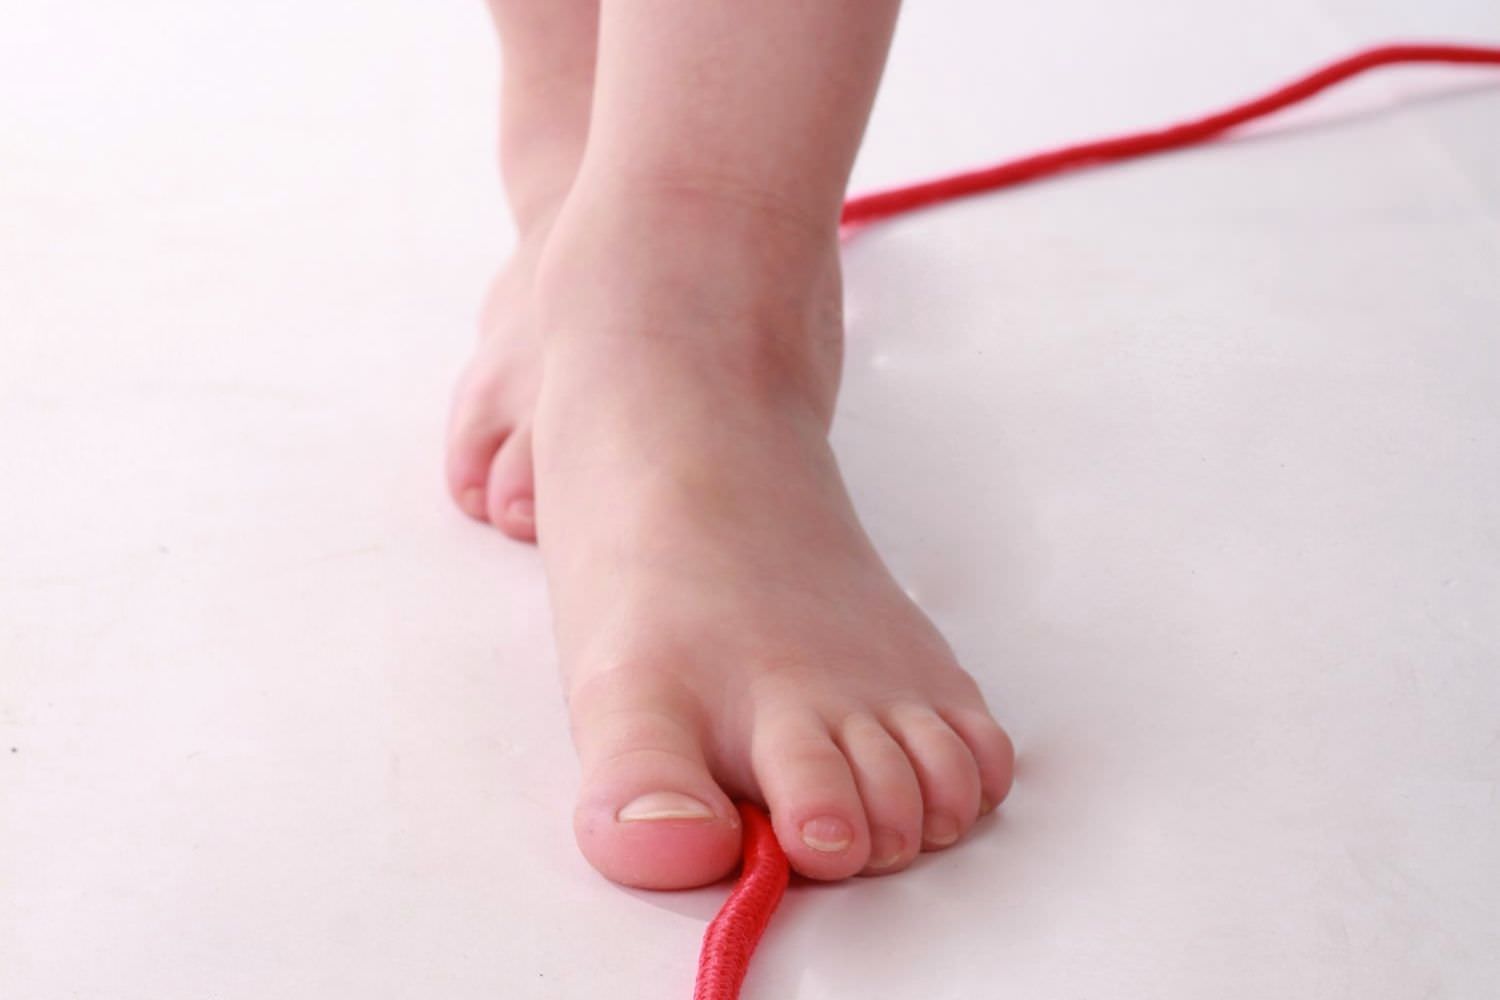 Bild zeigt: Nackte Kinderfüße stehen hintereinander auf einer roten Schnur